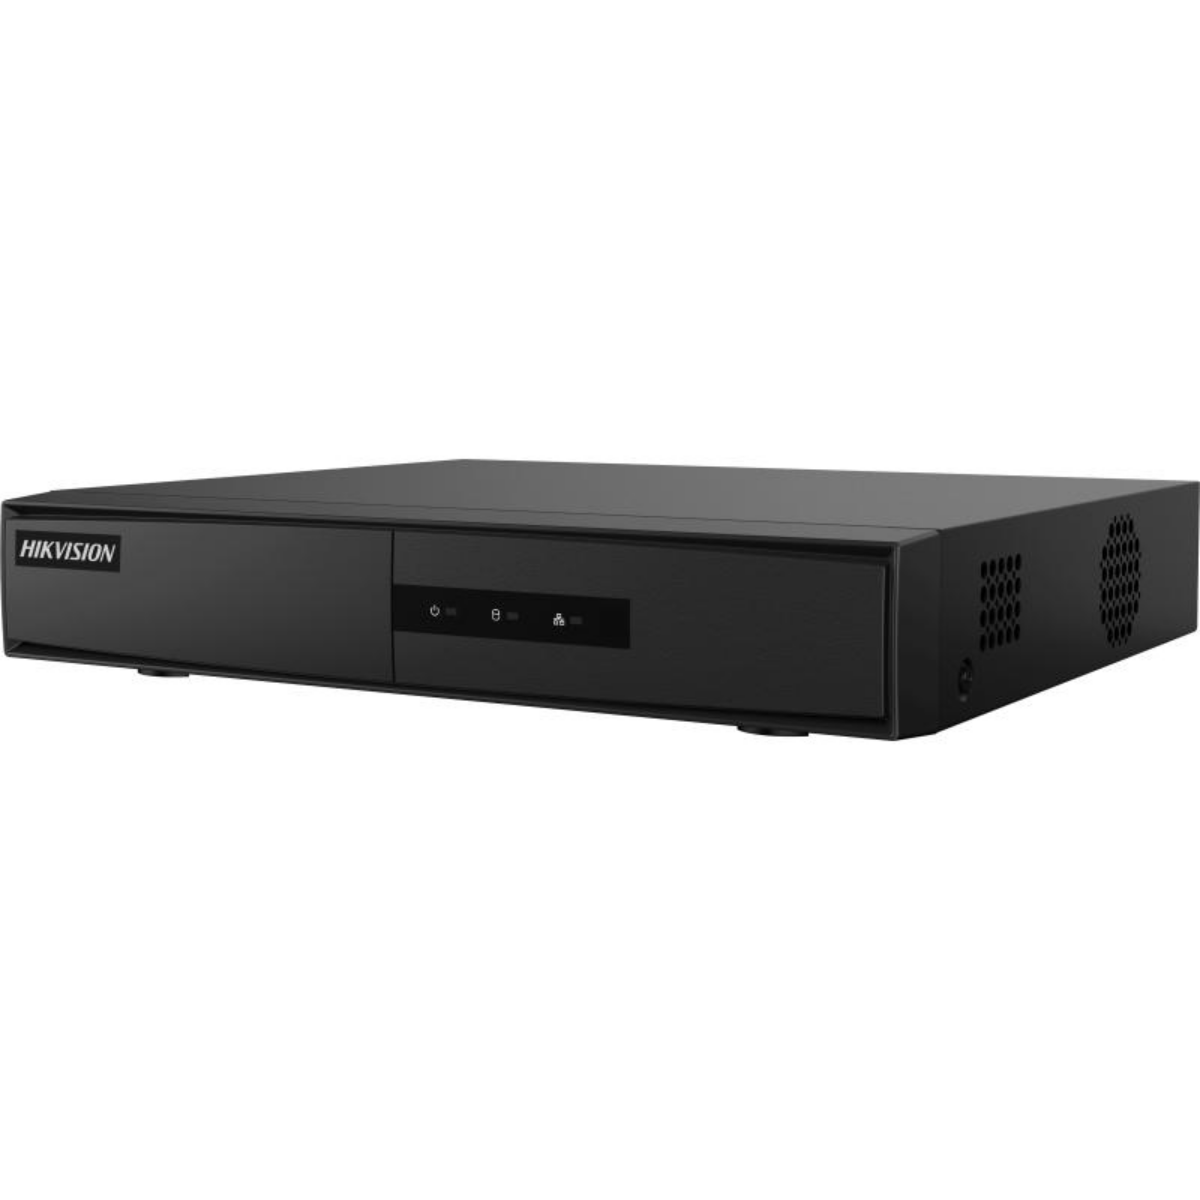 Hikvision  4-ch Mini 1U 4 PoE NVR – DS-7104NI-Q1/4P/M